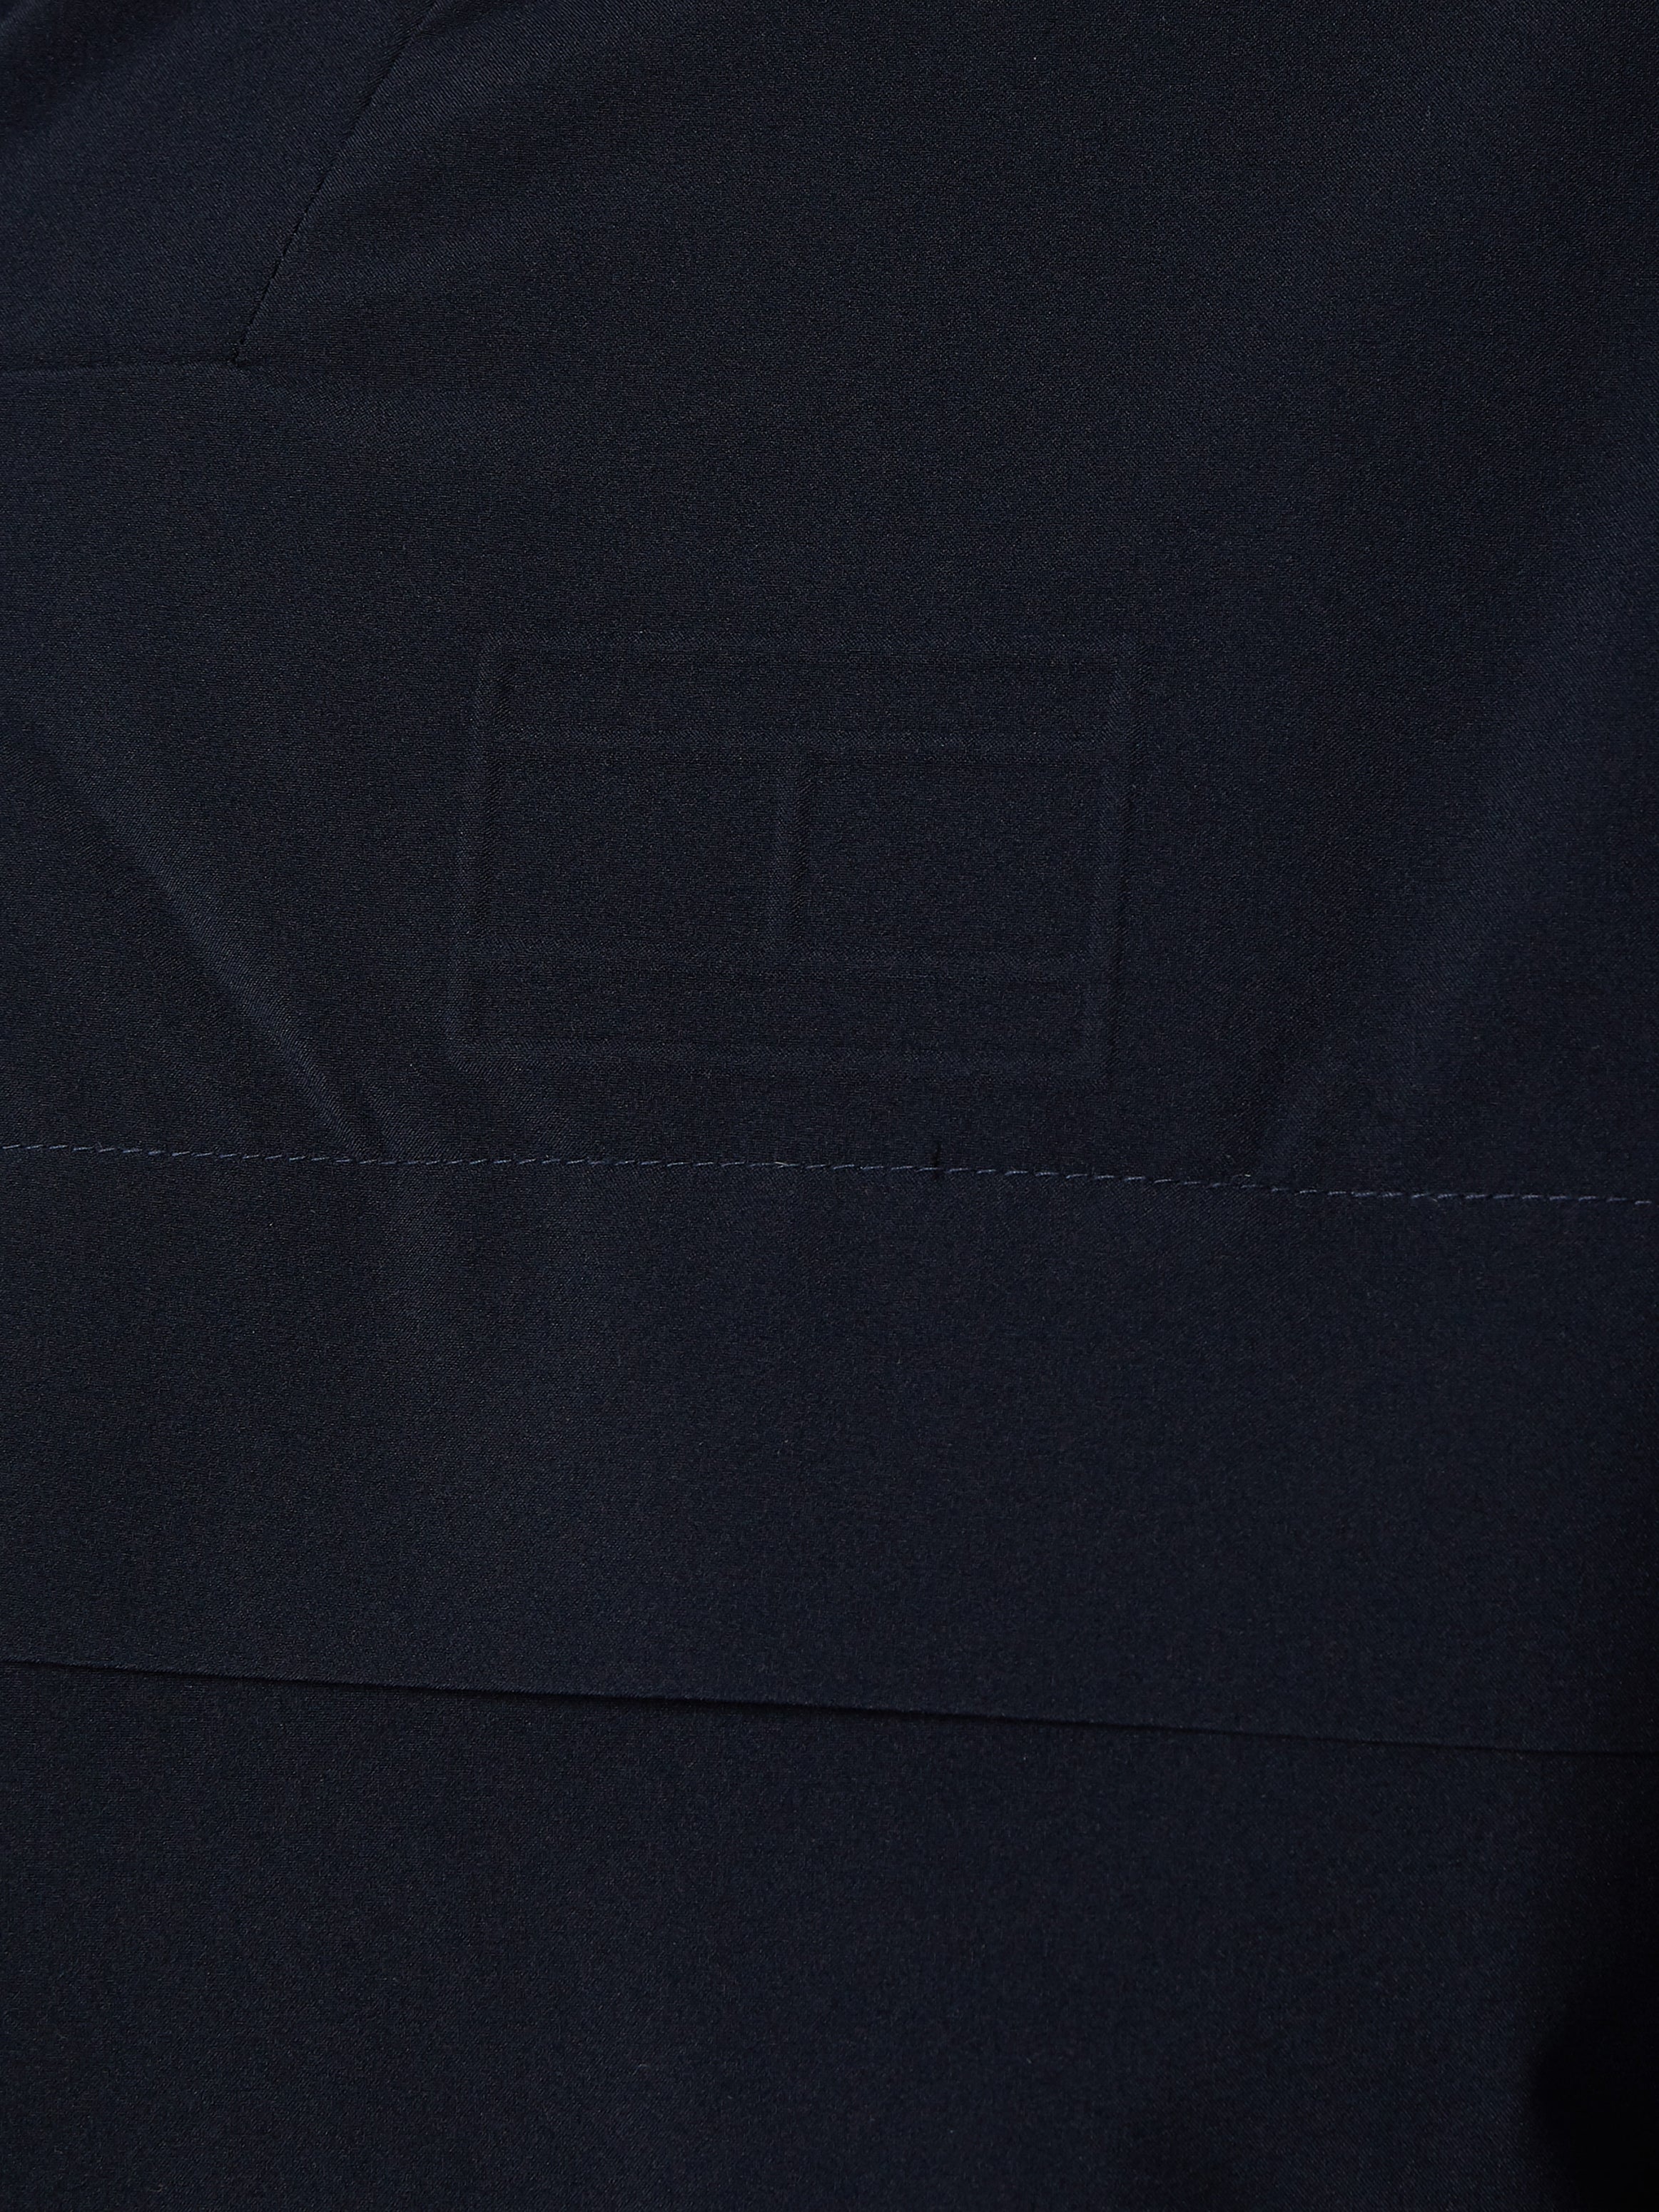 Veste zippée à capuche Tommy Hilfiger marine | Georgespaul